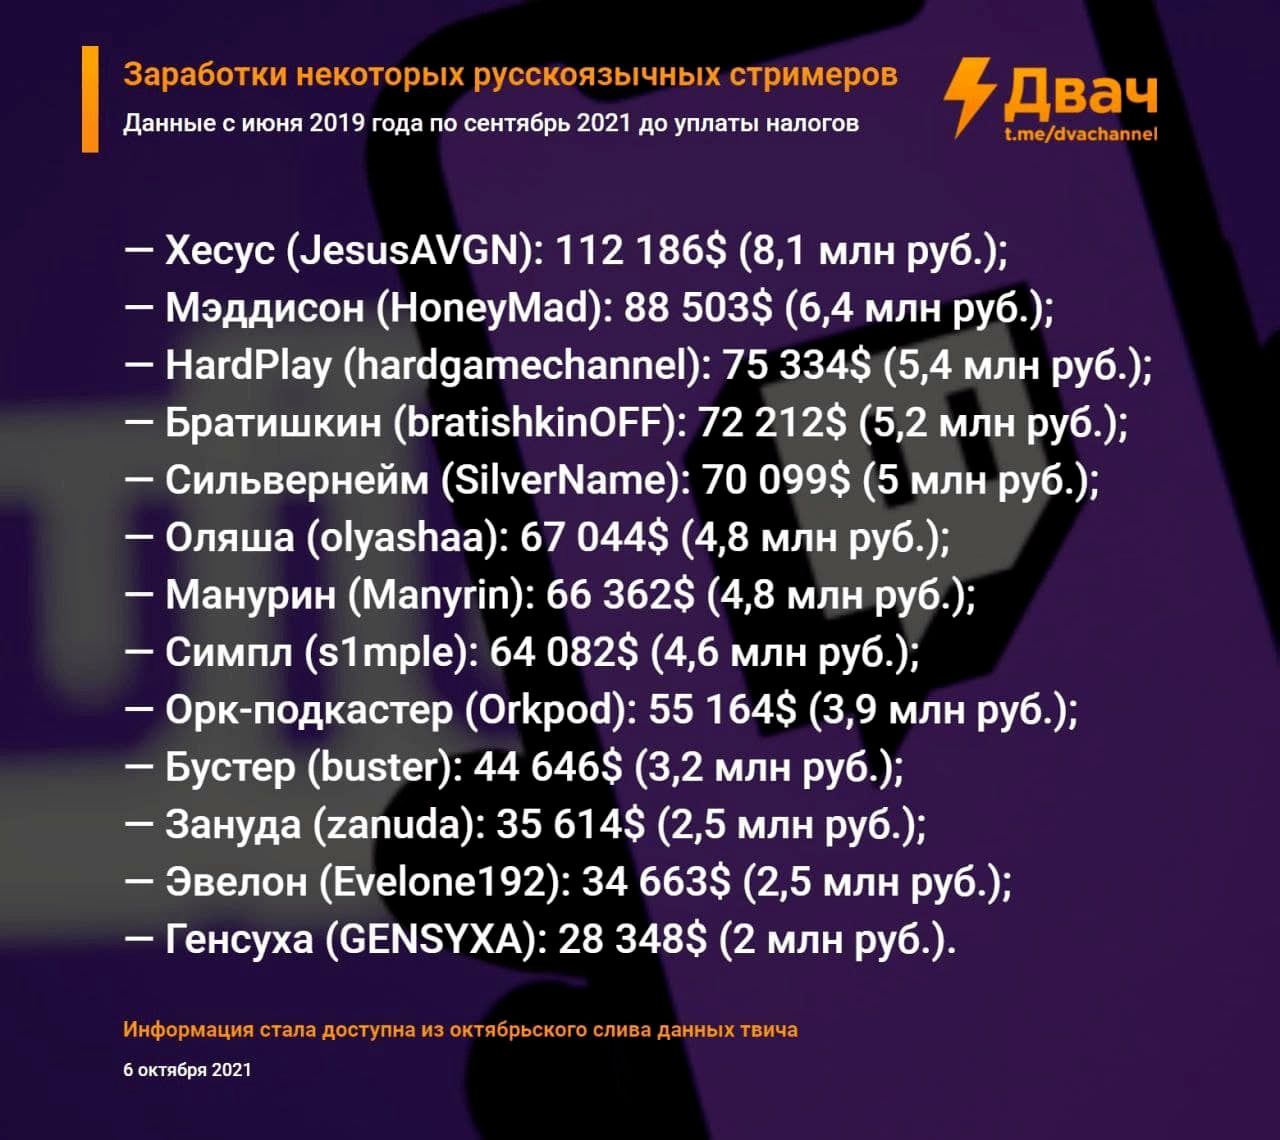 Самые высокооплачиваемые русскоязычные стримеры на Twitch | Источник: 2ch.hk